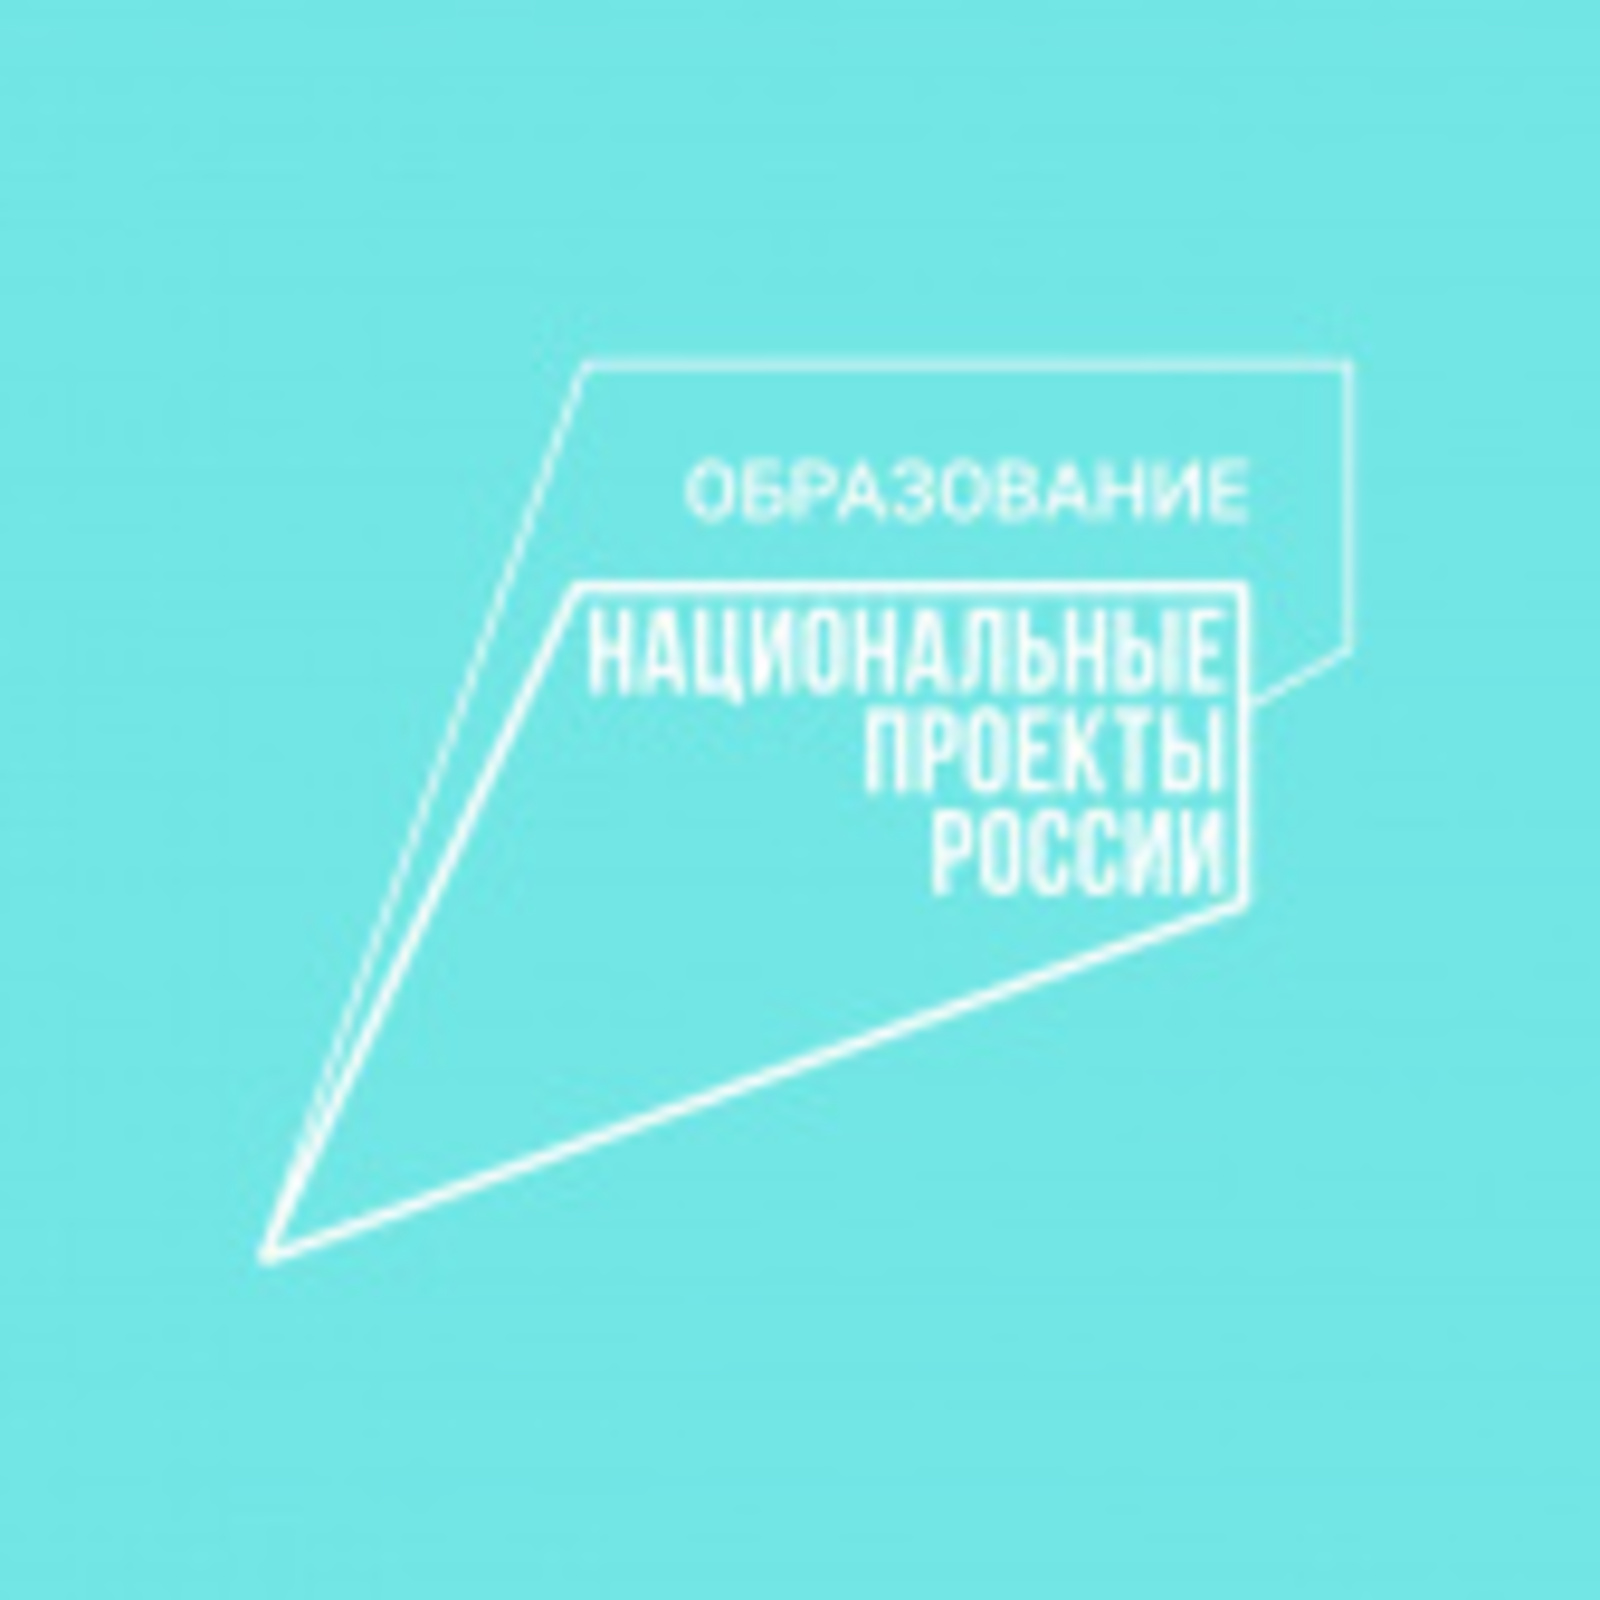 Башкортостан привлек более 90 млн рублей средств из федерального бюджета в рамках национального проекта «Образование»